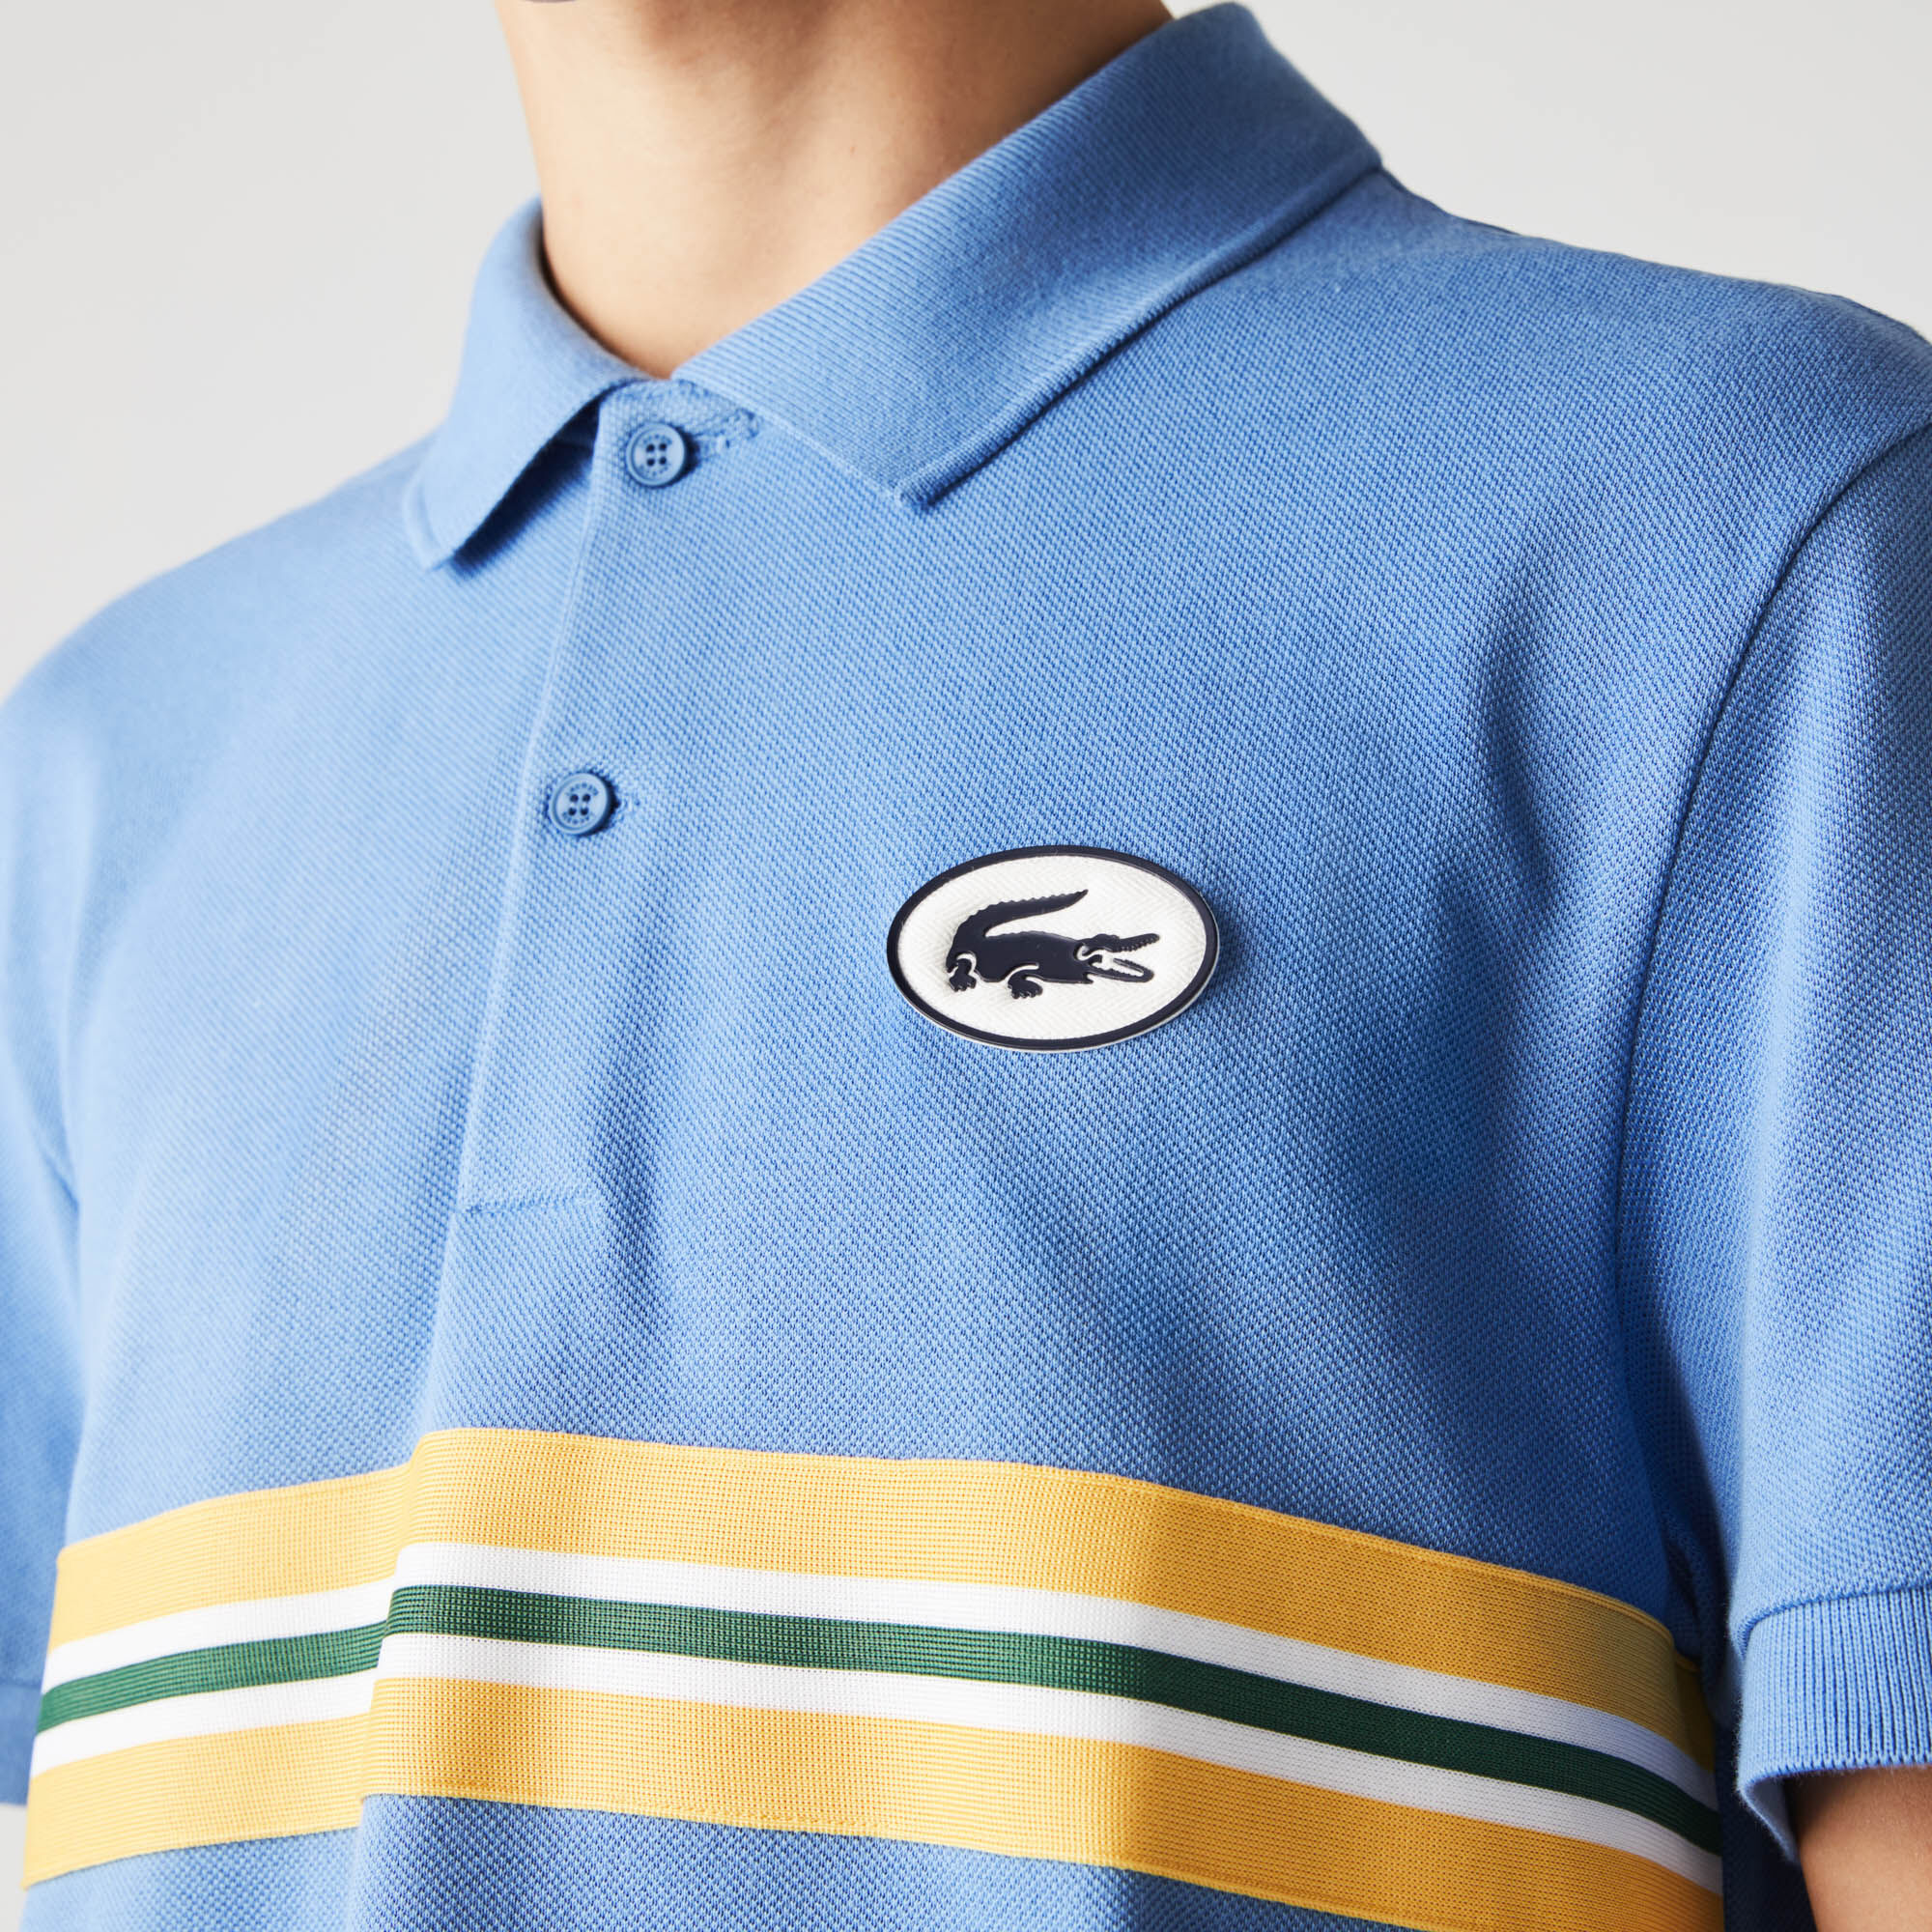 Men’s Lacoste Heritage Regular Fit Badge Cotton Piqué Polo Shirt